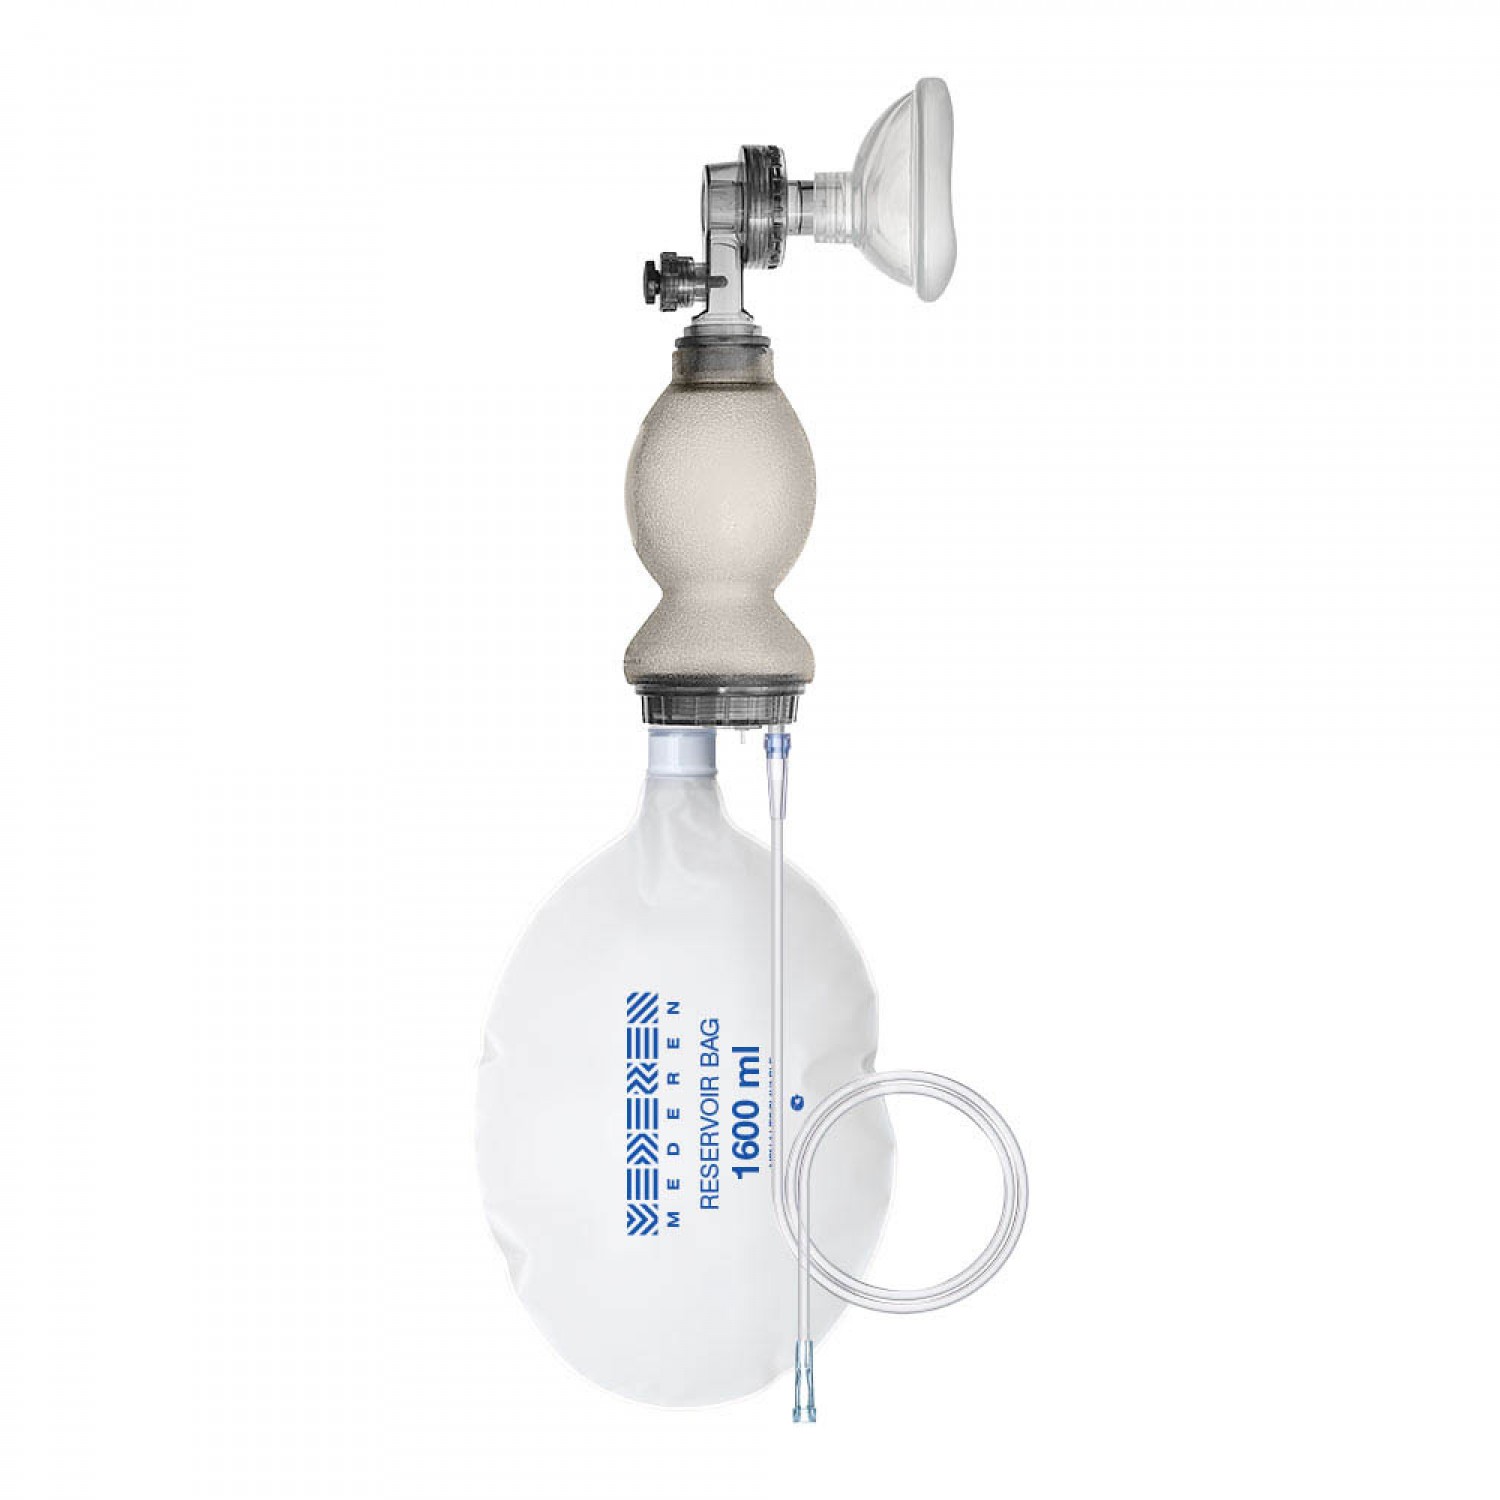 Manual Artificial lung ventilation device (Ambu Bag) 19